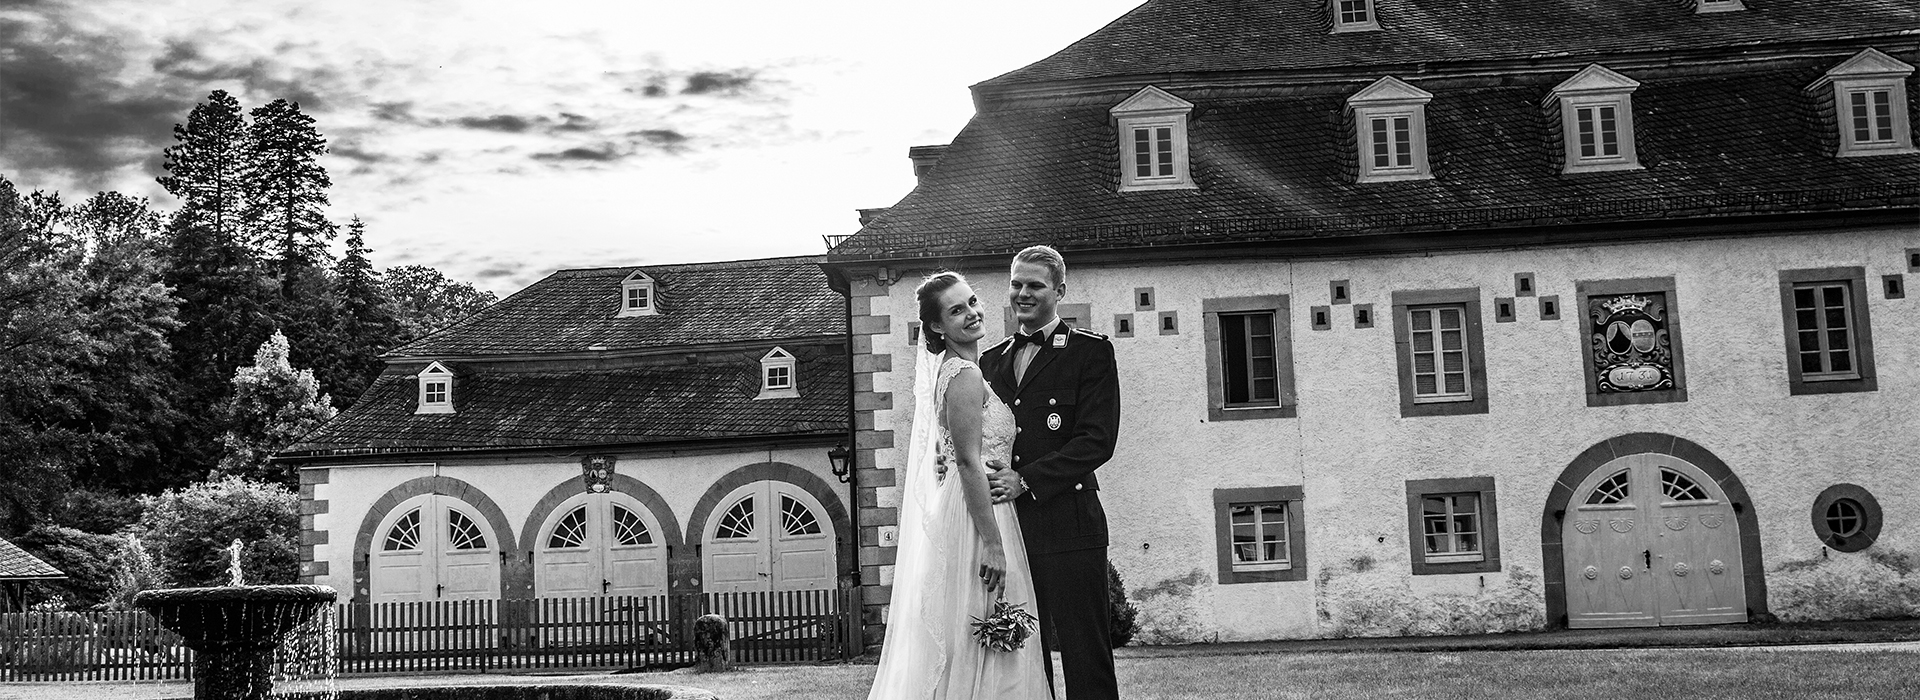 Hochzeitsfoto von Rosa & Mischa in der Viller Mühle in Gosch